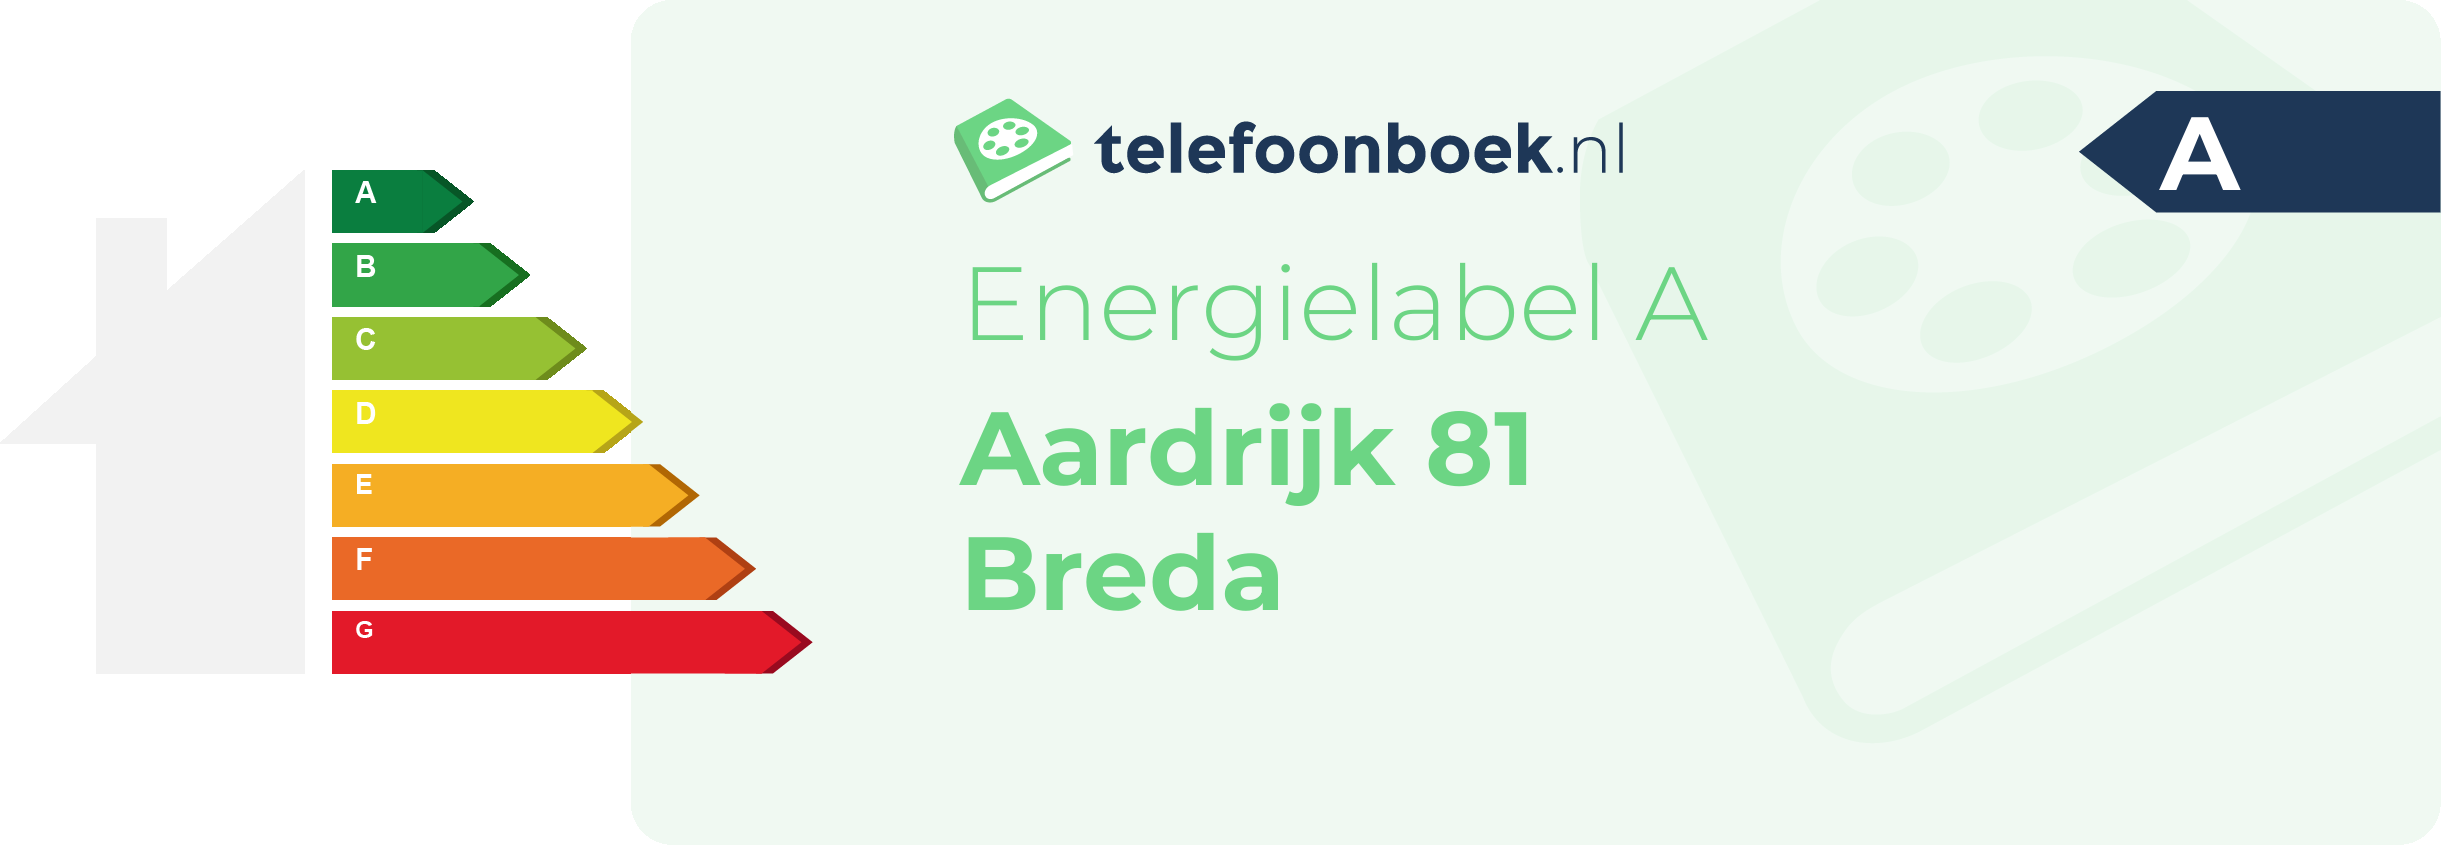 Energielabel Aardrijk 81 Breda